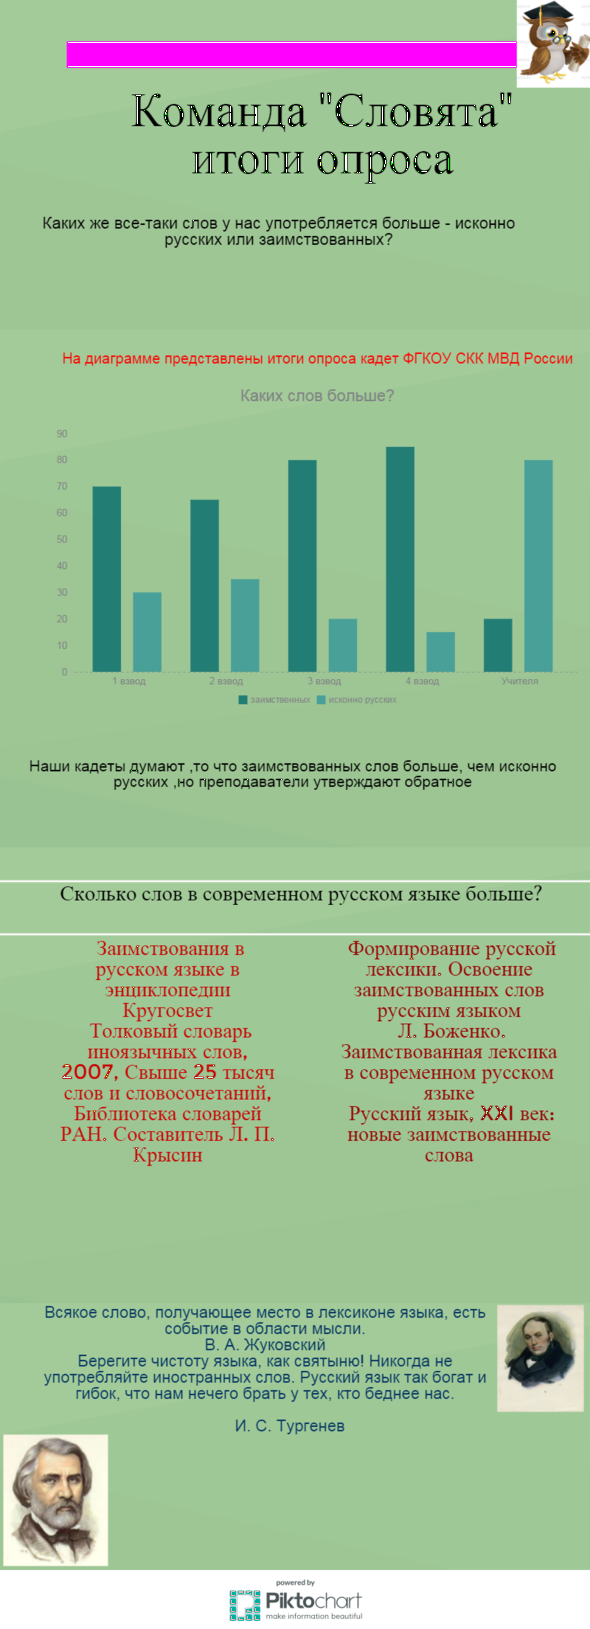 Инфографика Словята.PNG